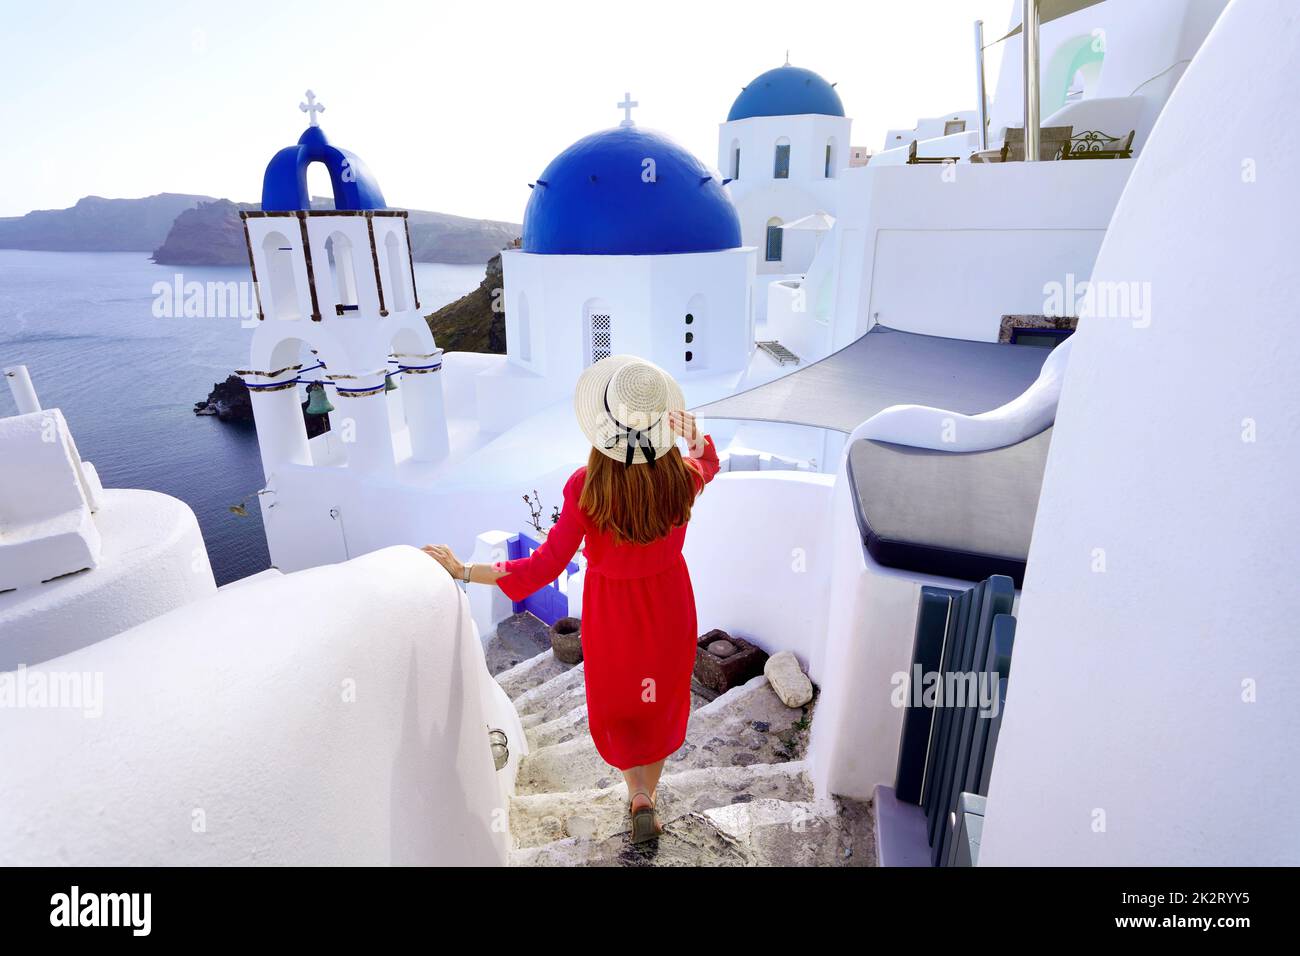 Turismo a Santorini. Giovane donna alla moda con vestito rosso e cappello scende lungo i gradini nel villaggio di Oia, sull'isola di Santorini. Turista di viaggio femminile per le sue vacanze in Grecia. Foto Stock